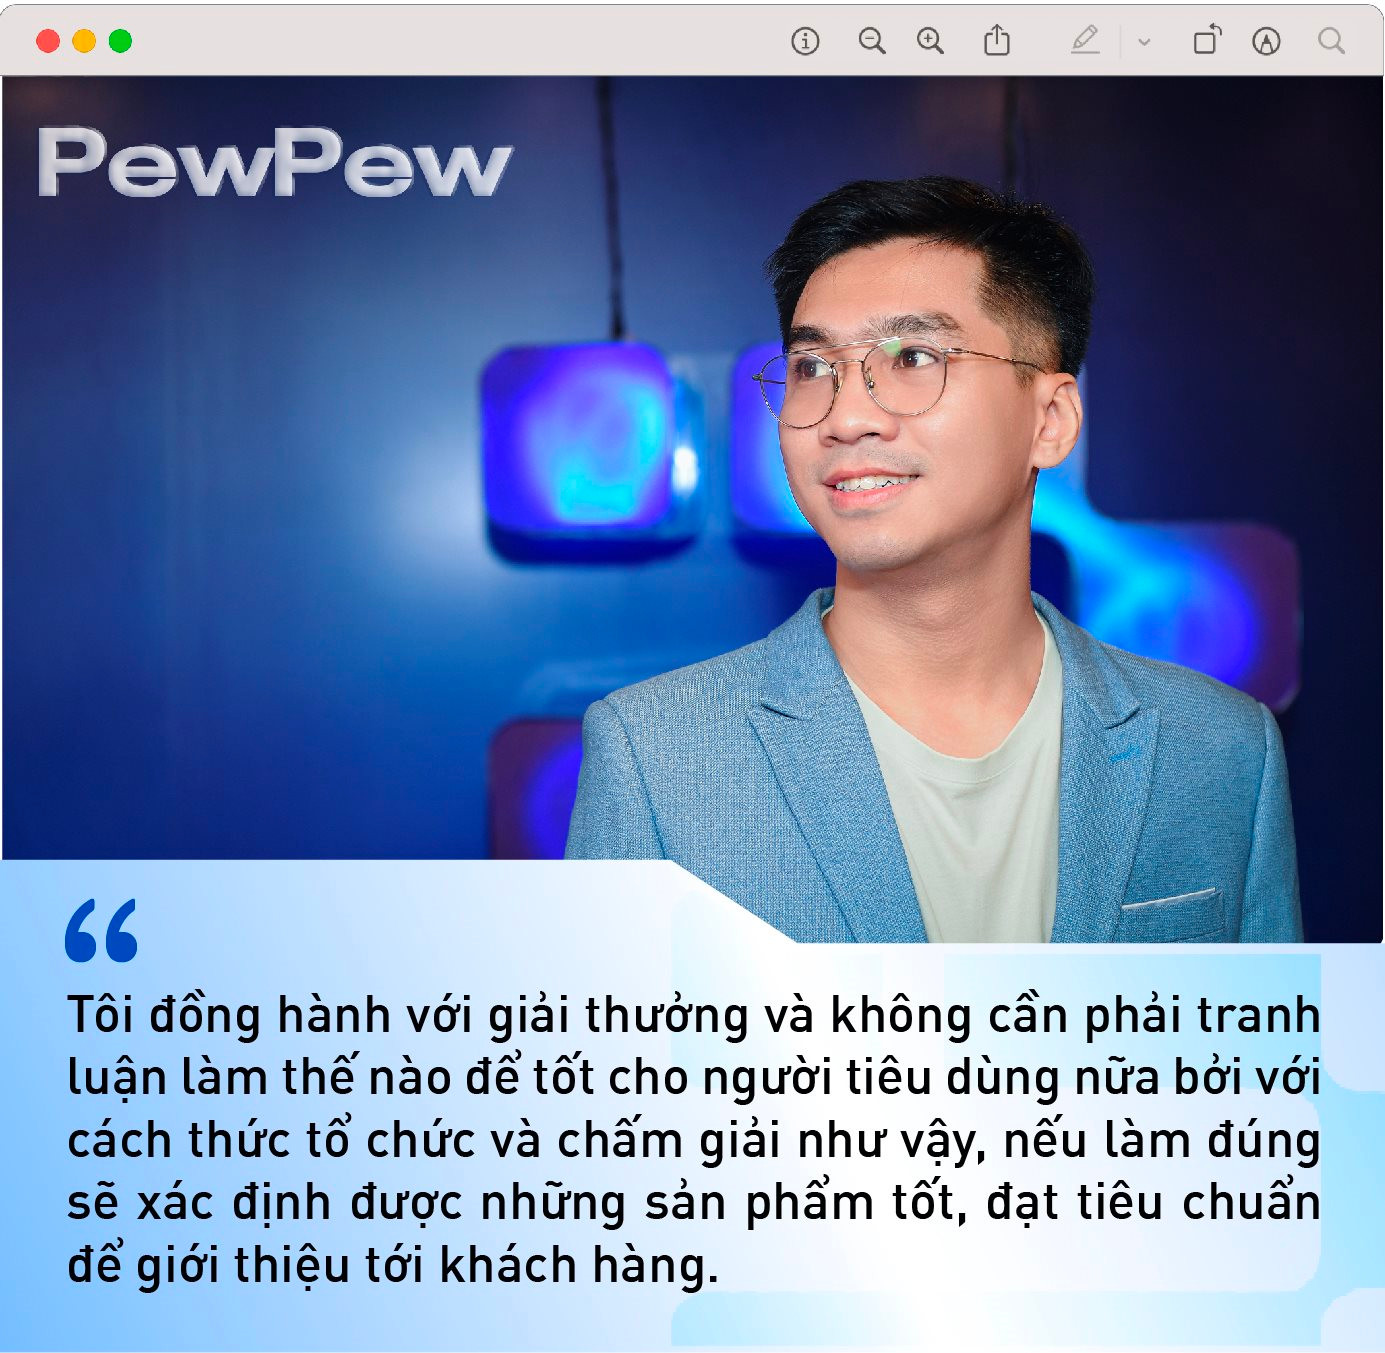 PewPew tiết lộ niềm vui lớn nhất khi livestream bán hàng trên Tiktok, và chuyện háo hức đồng hành cùng giải thưởng vì người tiêu dùng tầm quốc gia - Ảnh 6.